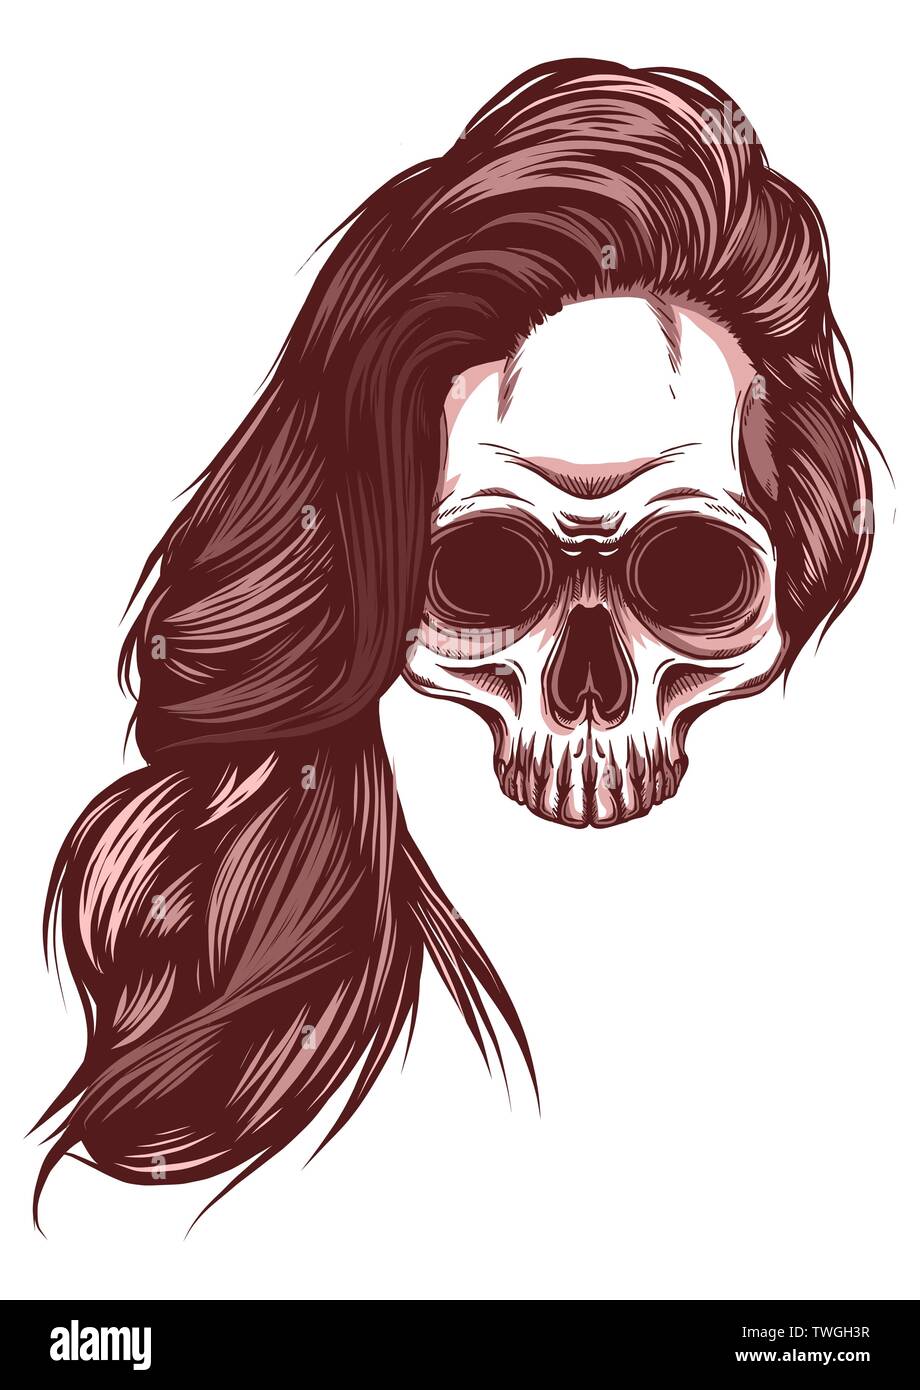 Femme illustration vecteur crâne avec fond blanc Illustration de Vecteur